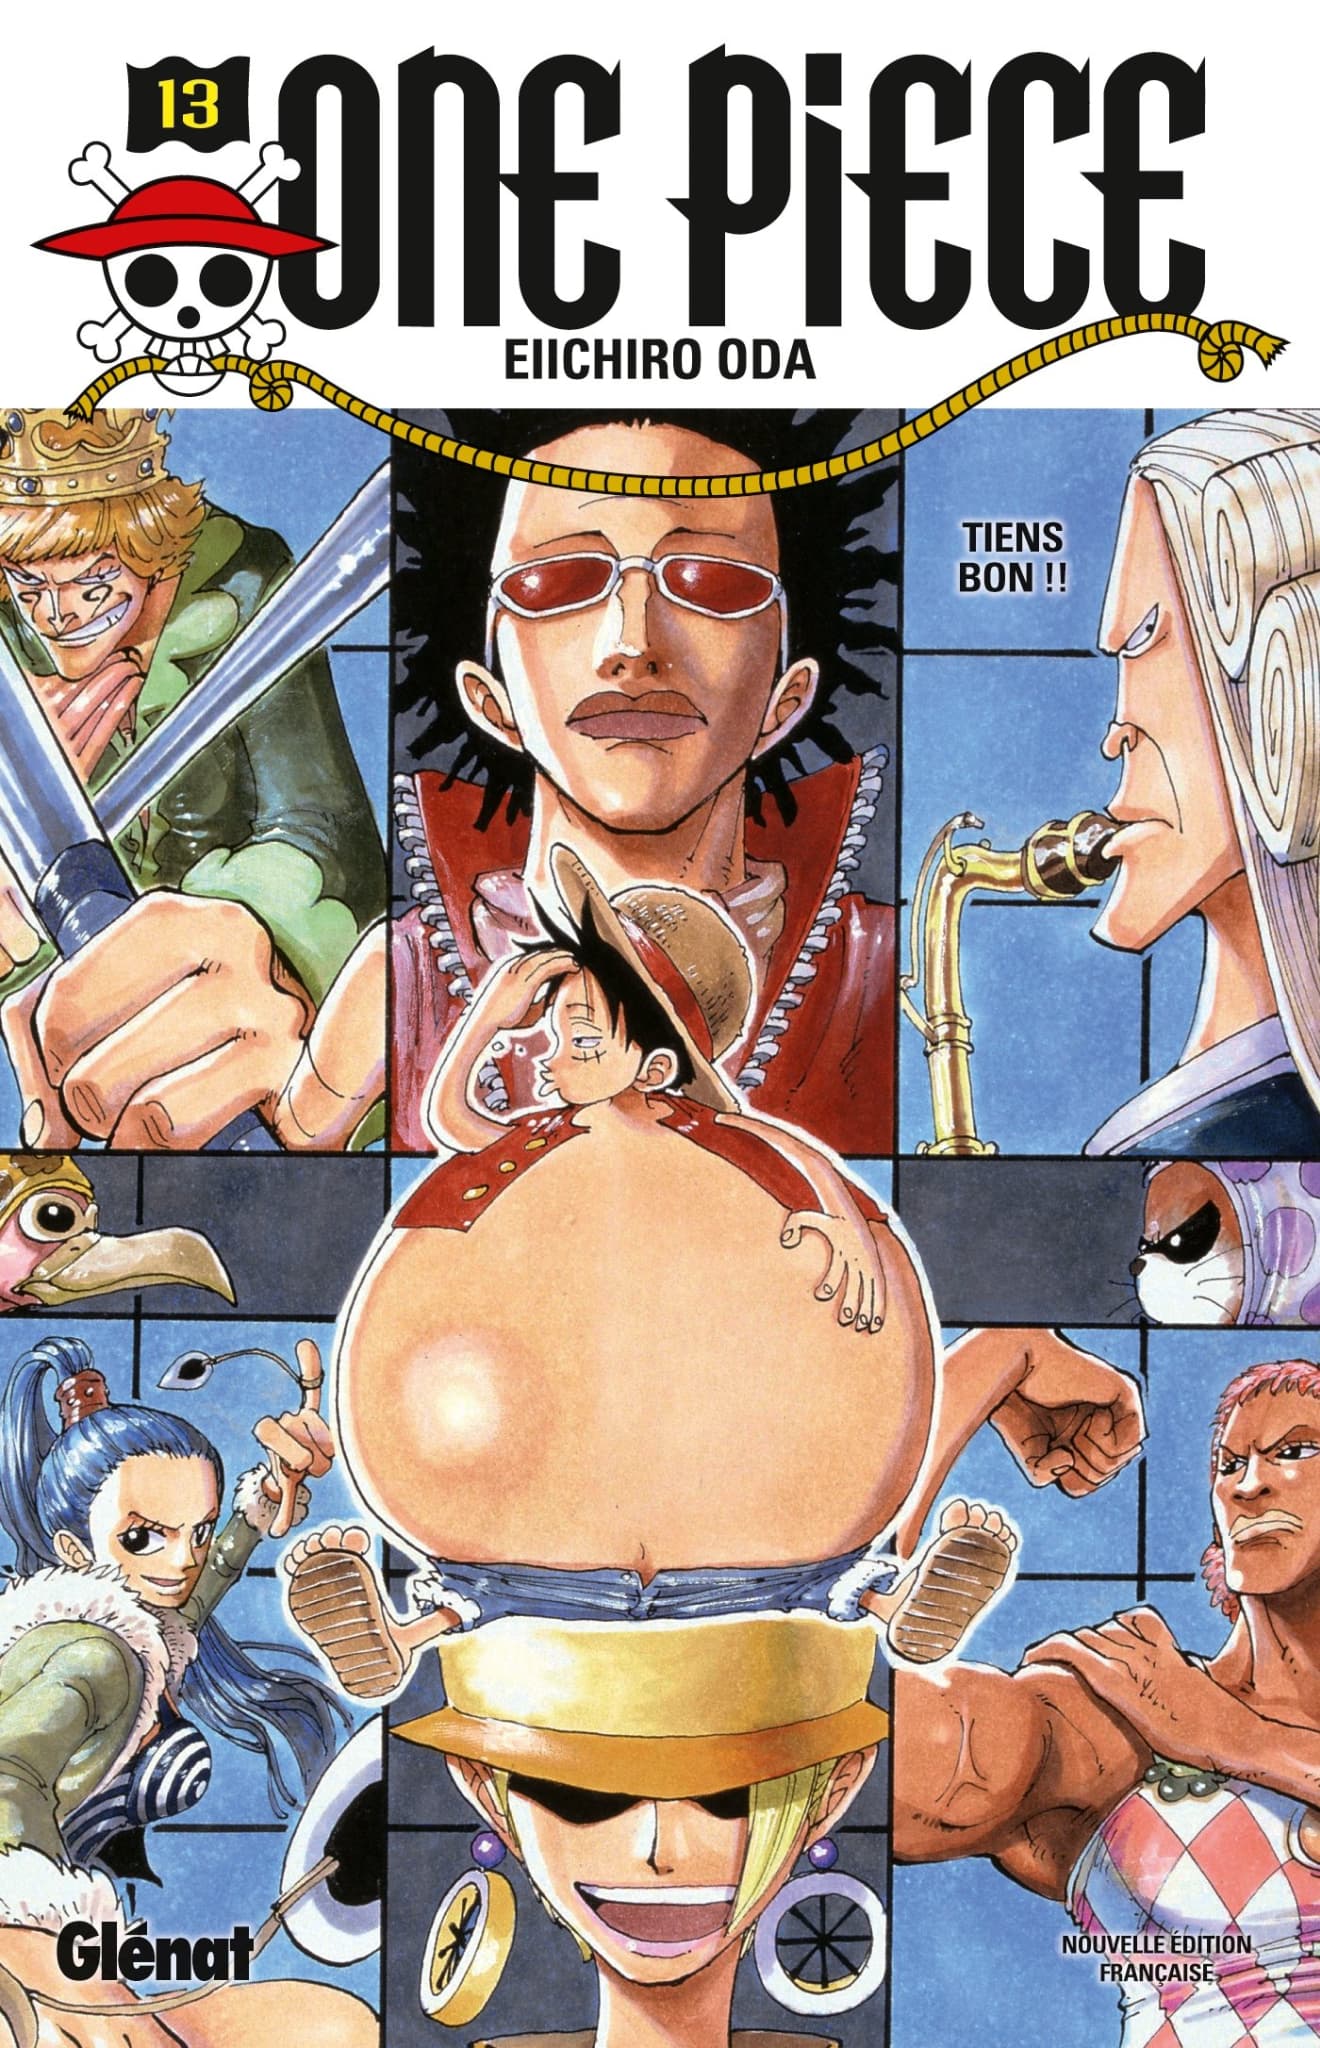 La couverture officiel du tome 106 du manga One Piece ! 